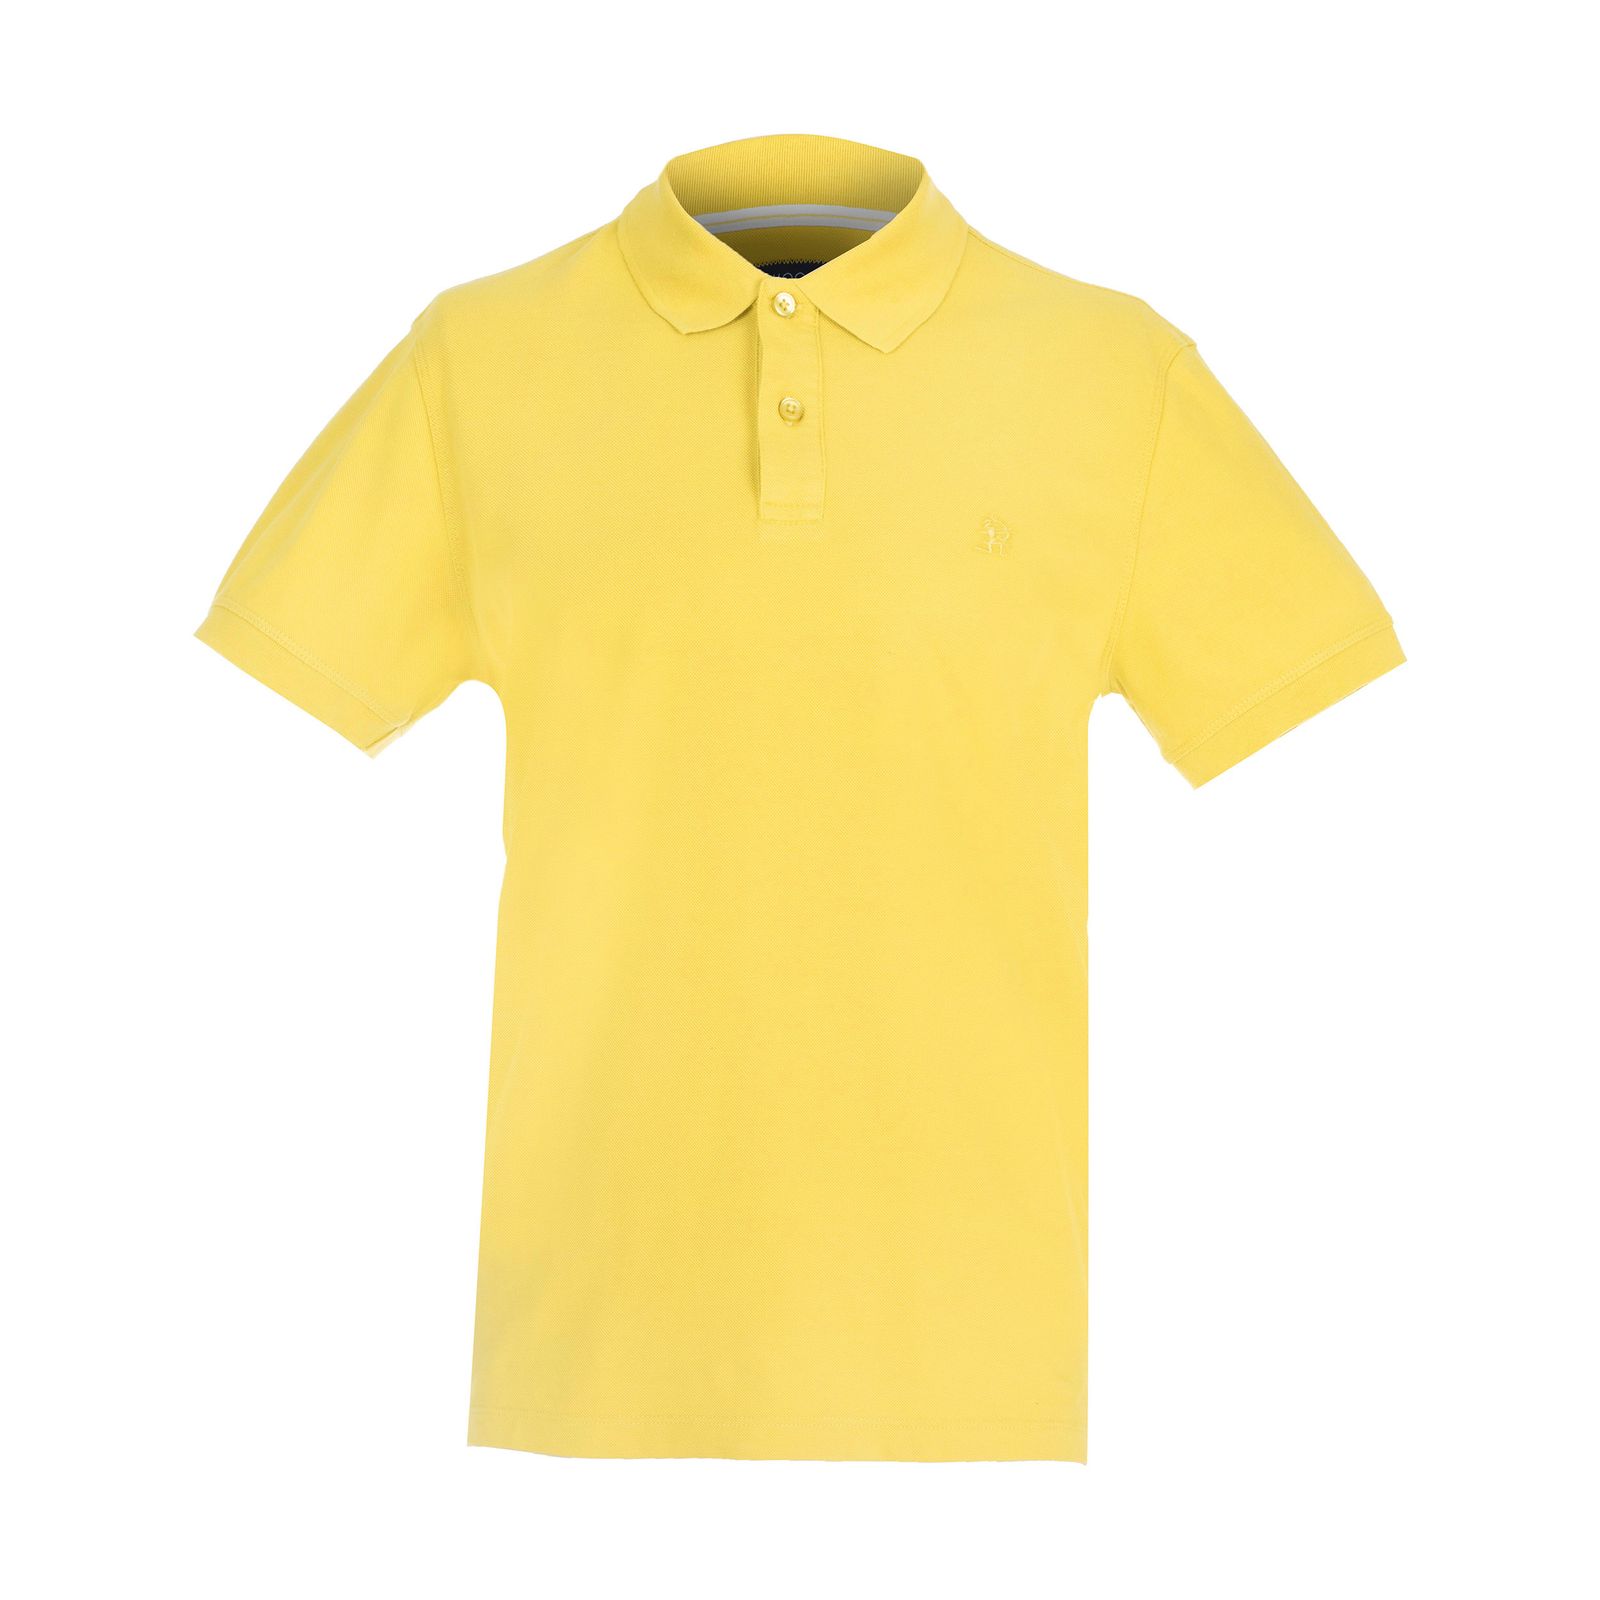 تی شرت مردانه سیاوود کد 7120415 رنگ زرد -  - 2